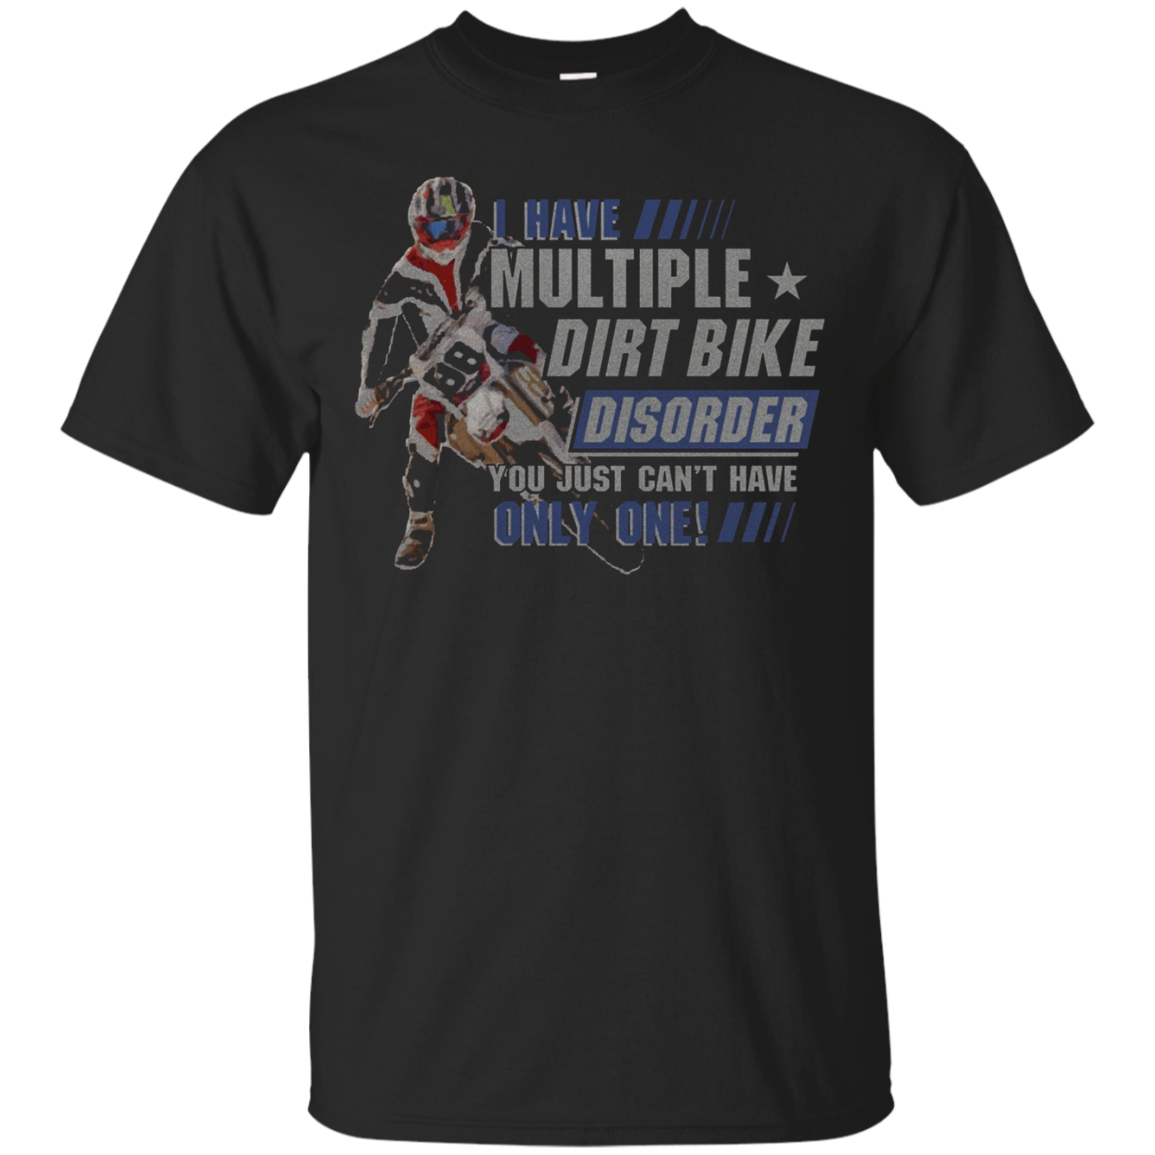 Funny Novelty Dirt Bike T Shirt For Motorcross Riders